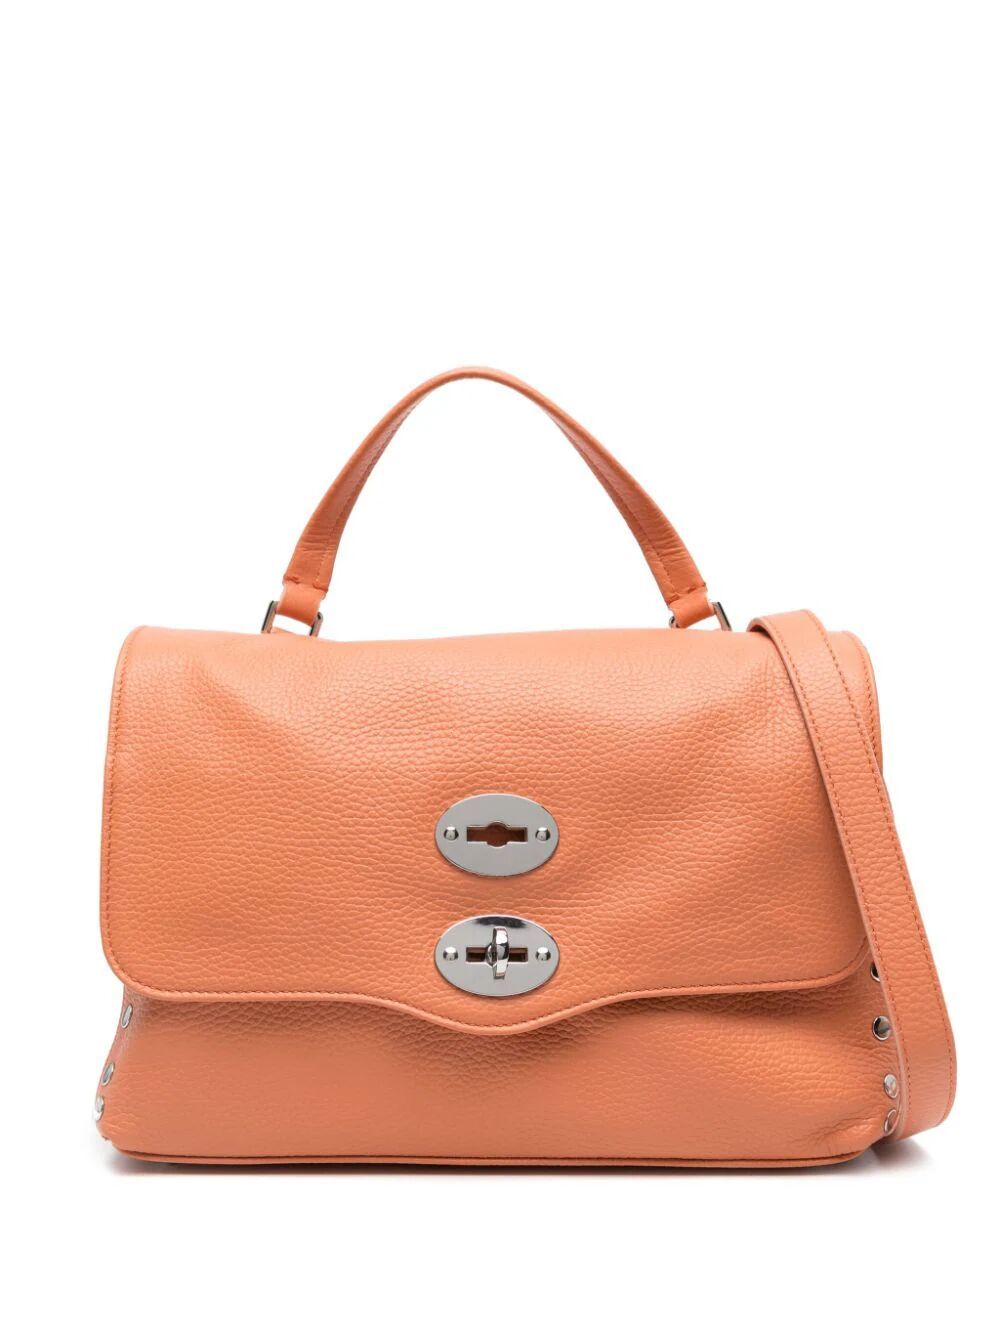 ZANELLATO Women's Sunny Yellow Calf Leather Mini Handbag SS24